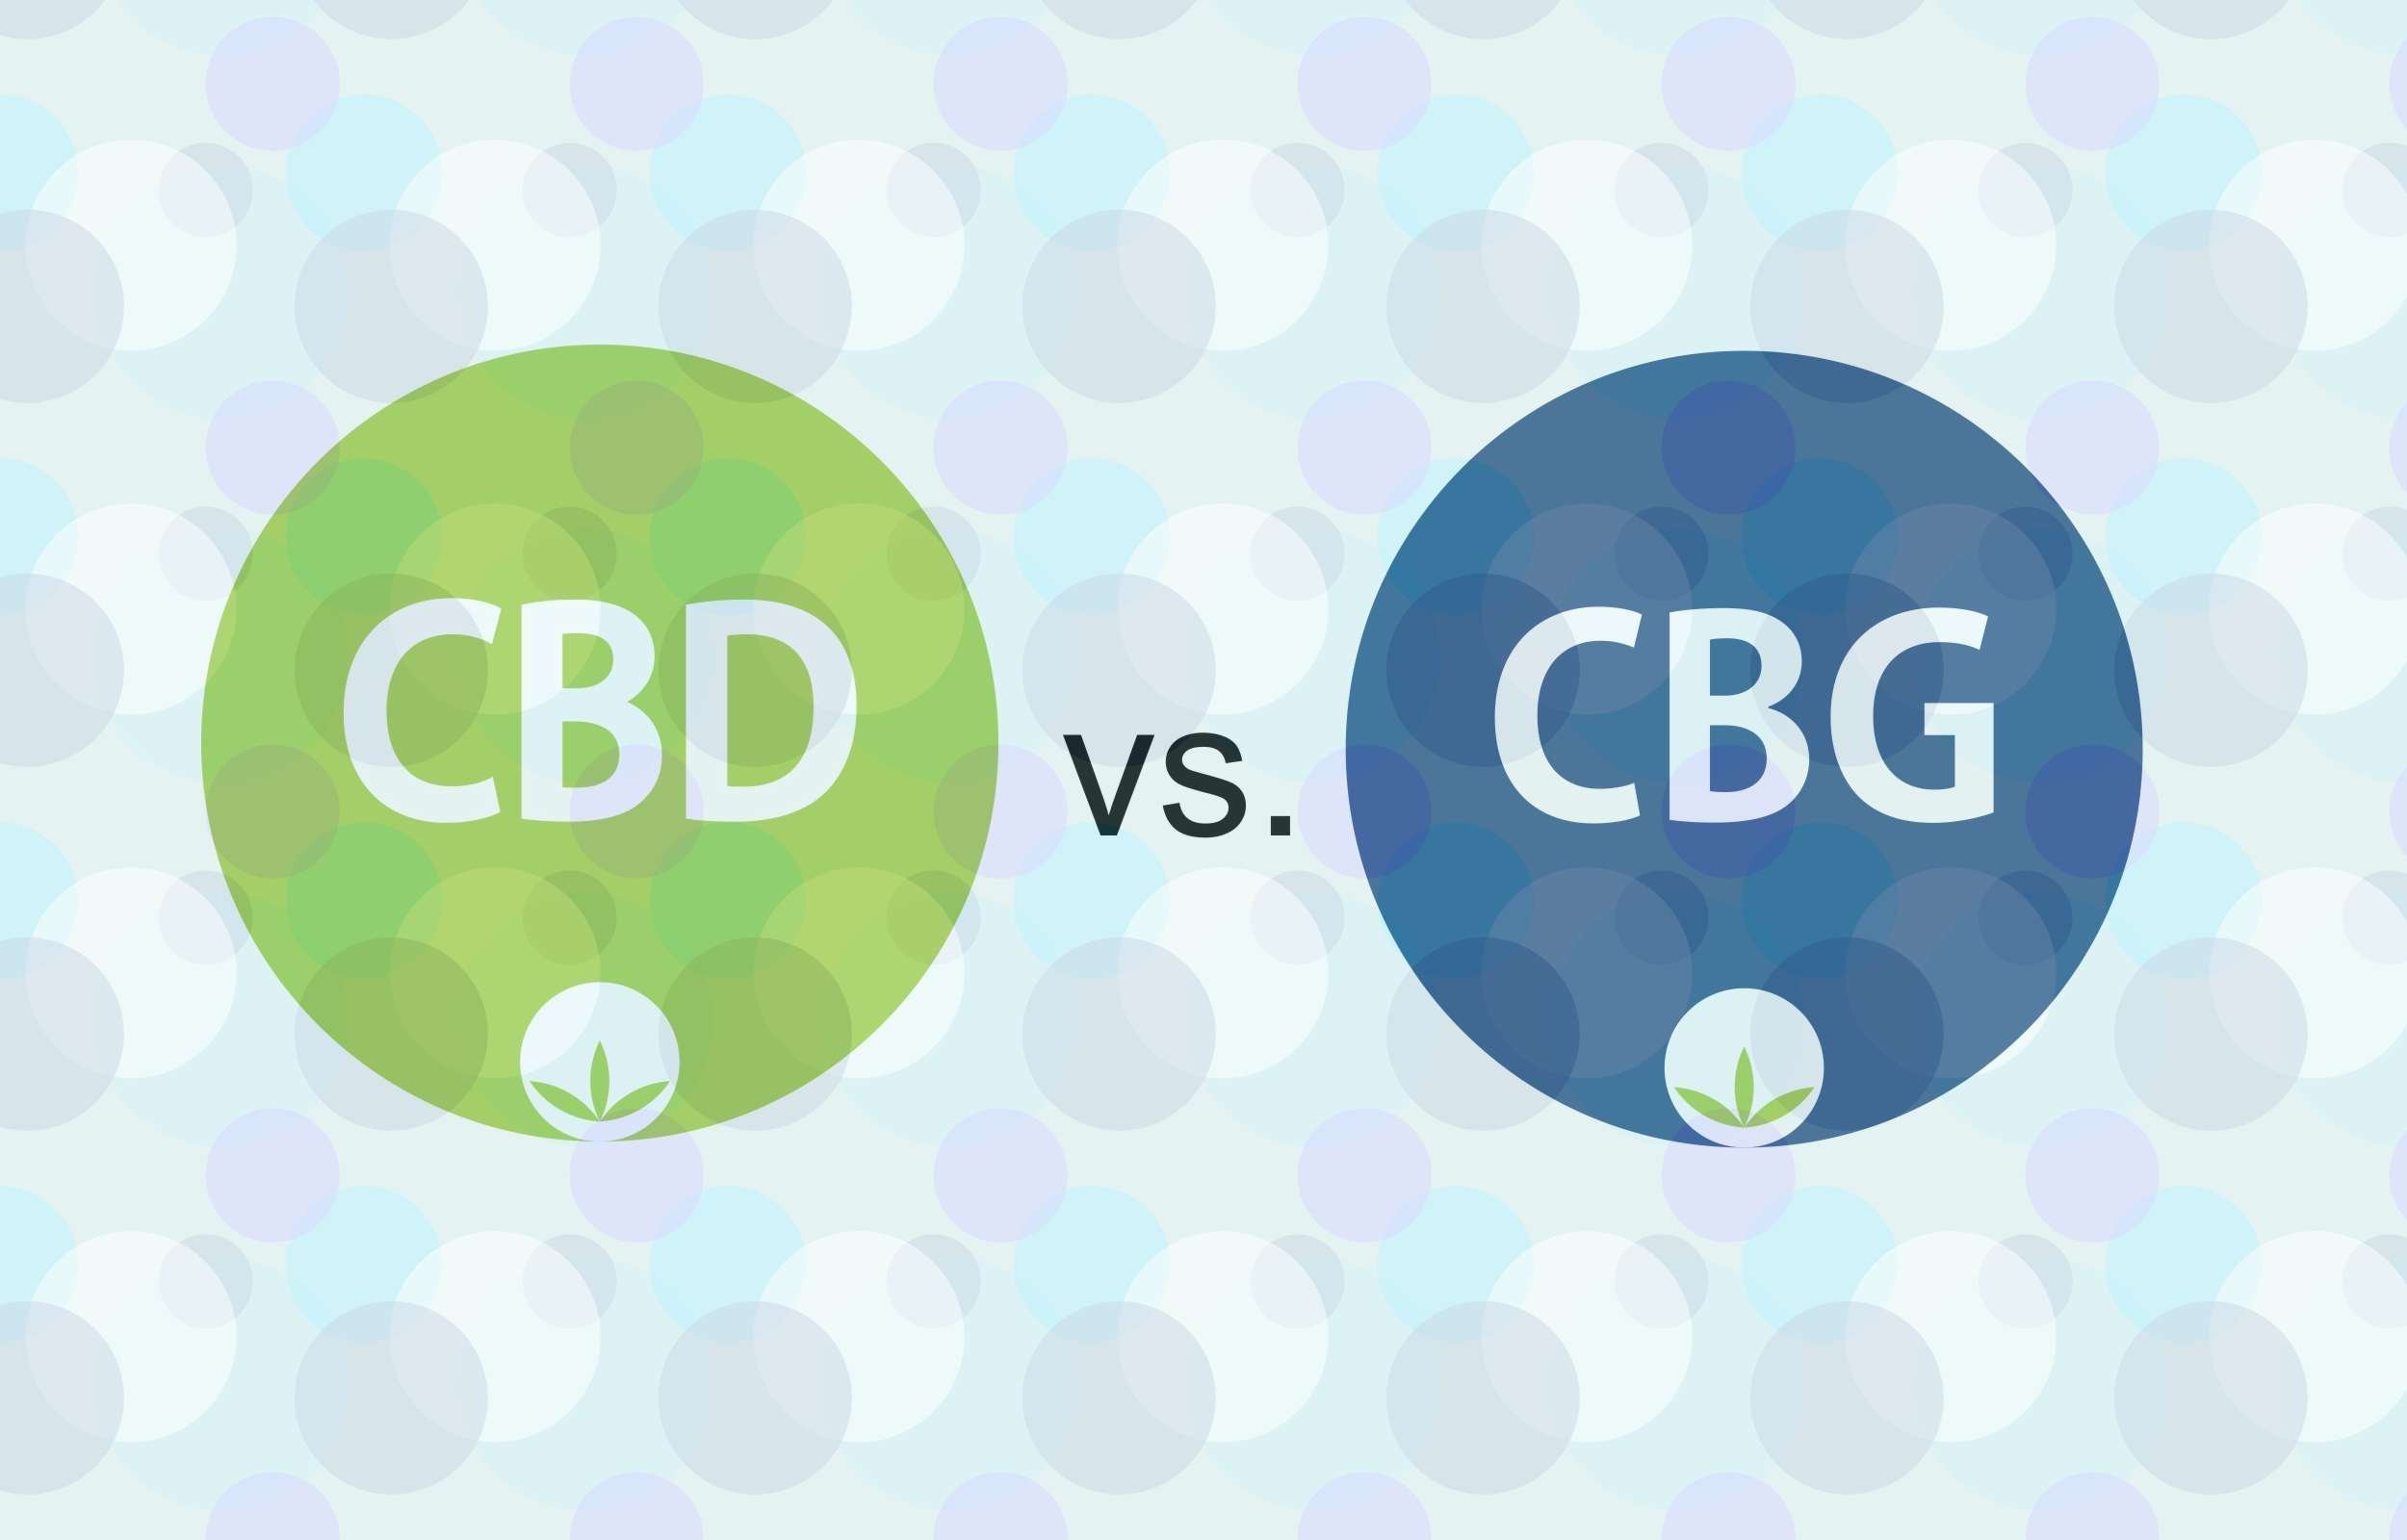 Slika služi kot hiter pregled med CBD in CBG, grafično prikazane razlike.